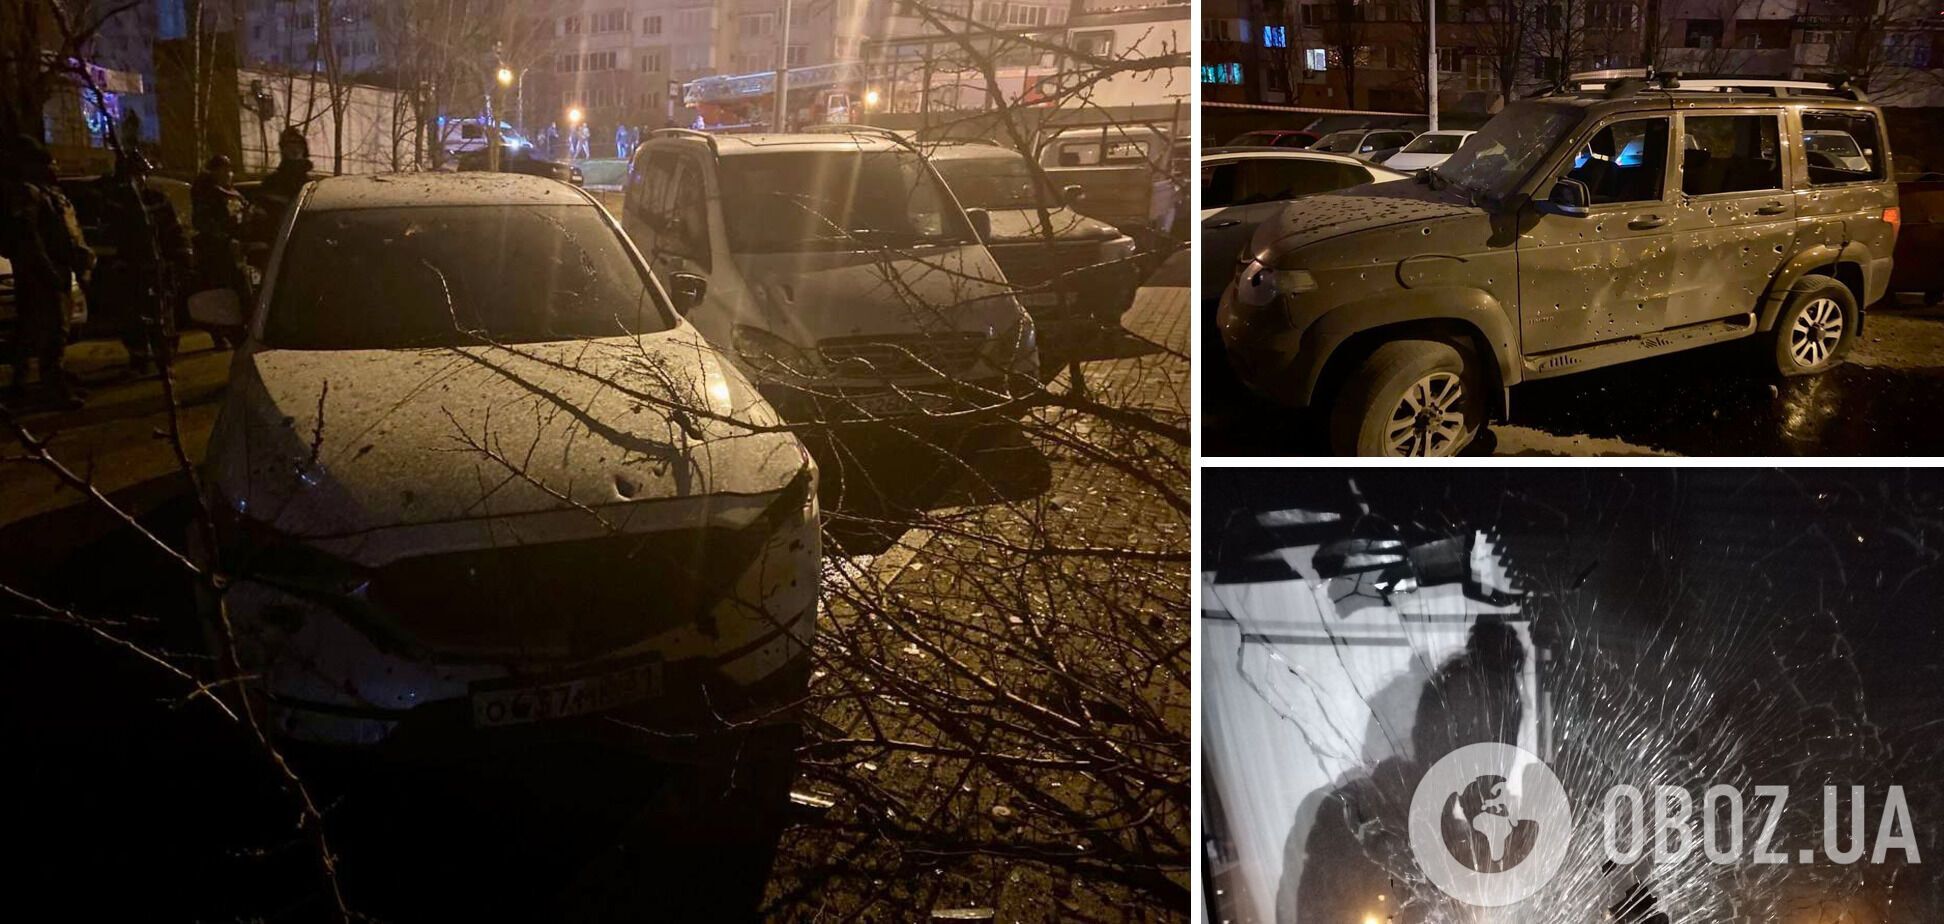 Выла сирена, гремели взрывы: в Белгородской области пожаловались на новую атаку, россияне в истерике. Фото и видео